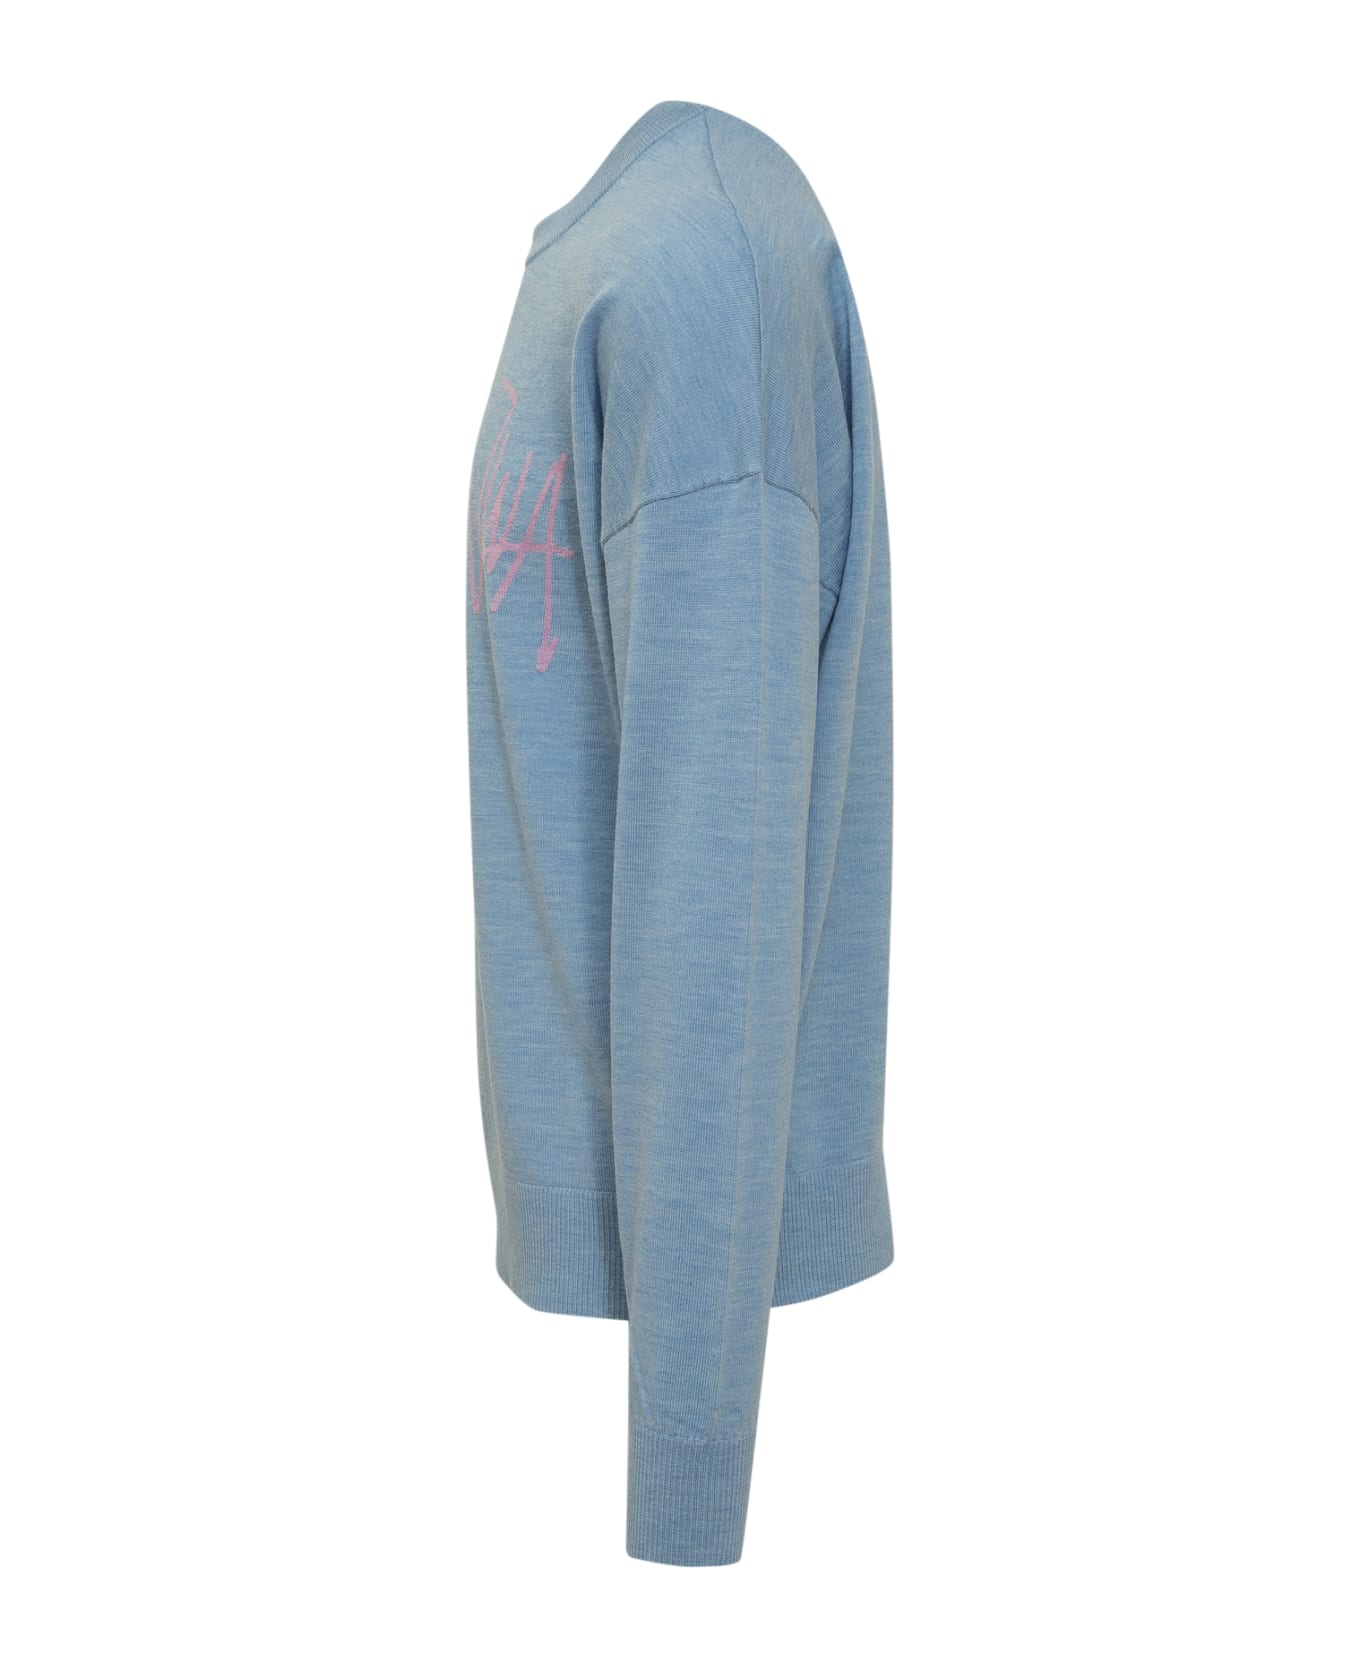 J.W. Anderson Sweater With Logo - DENIMBLU/LILAC